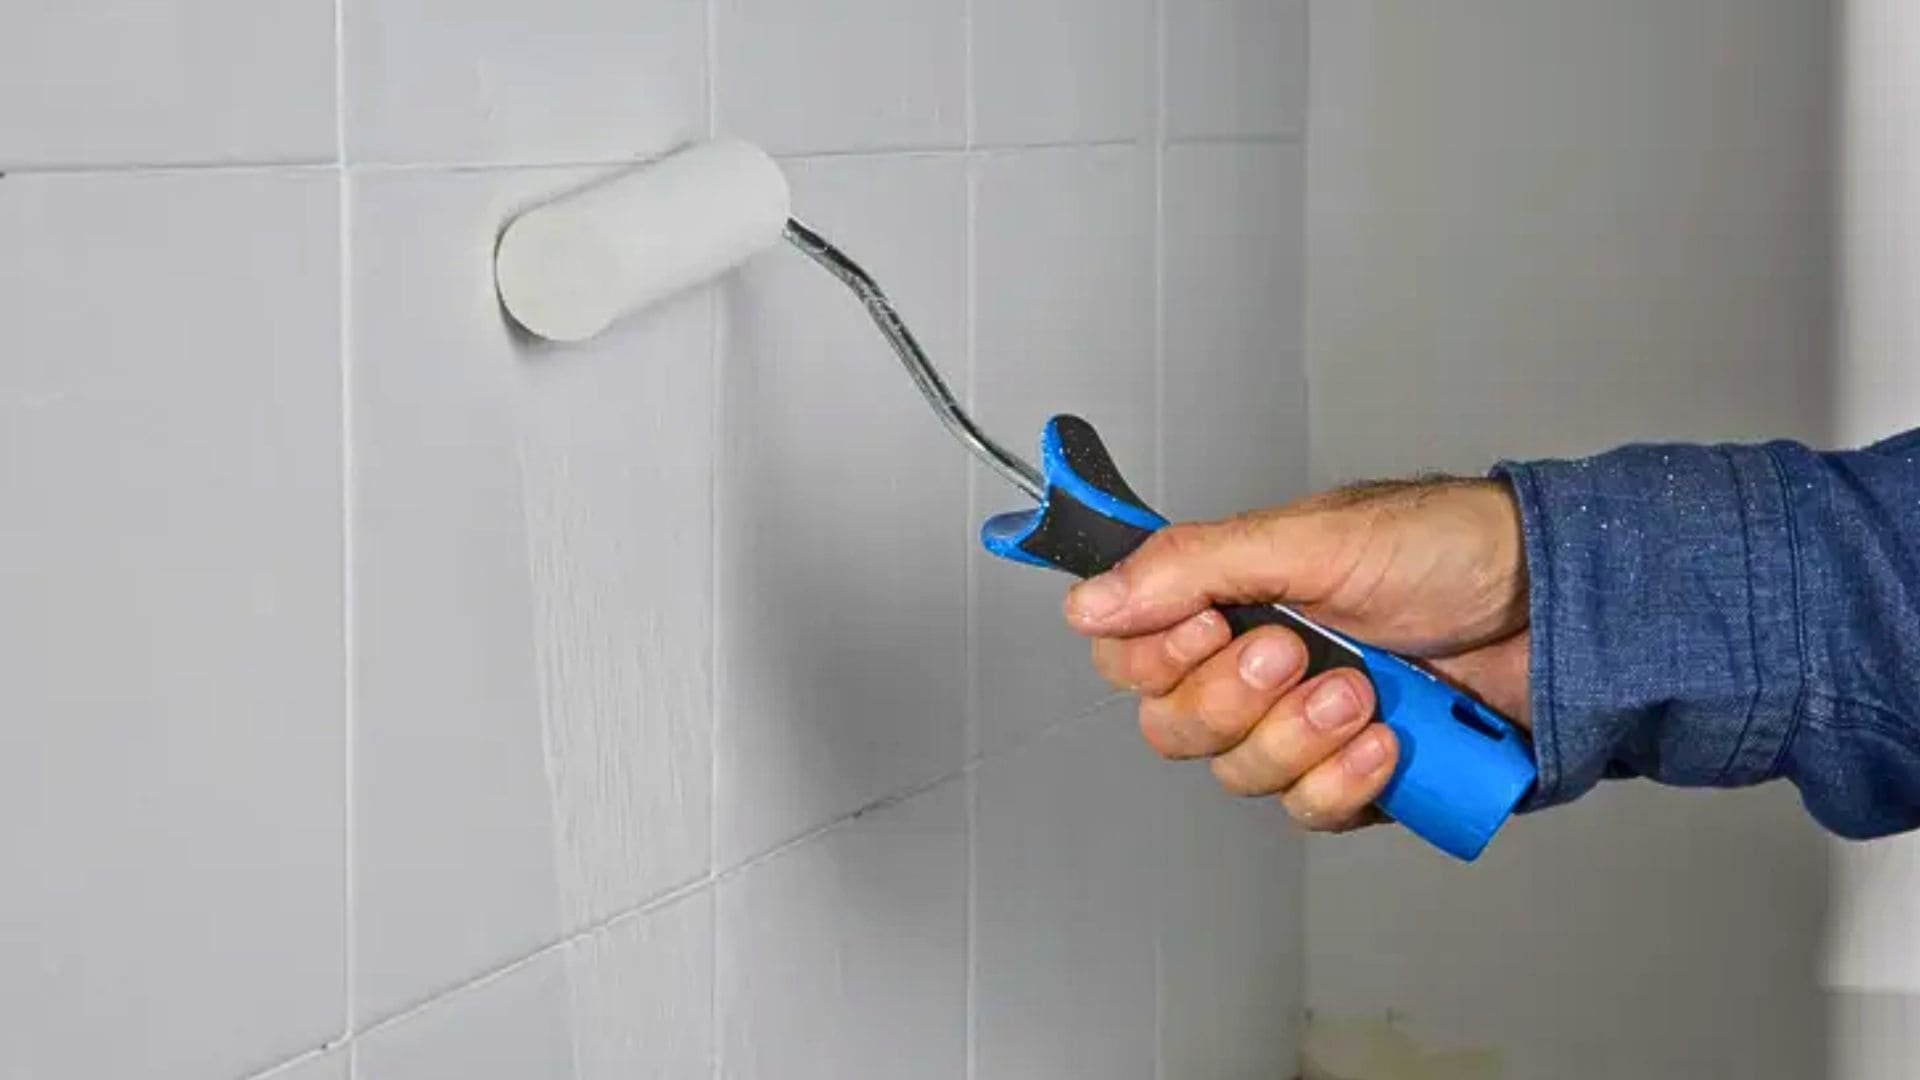 Leroy Merlin tiene azulejos adhesivos para cambiar el baño sin hacer obras